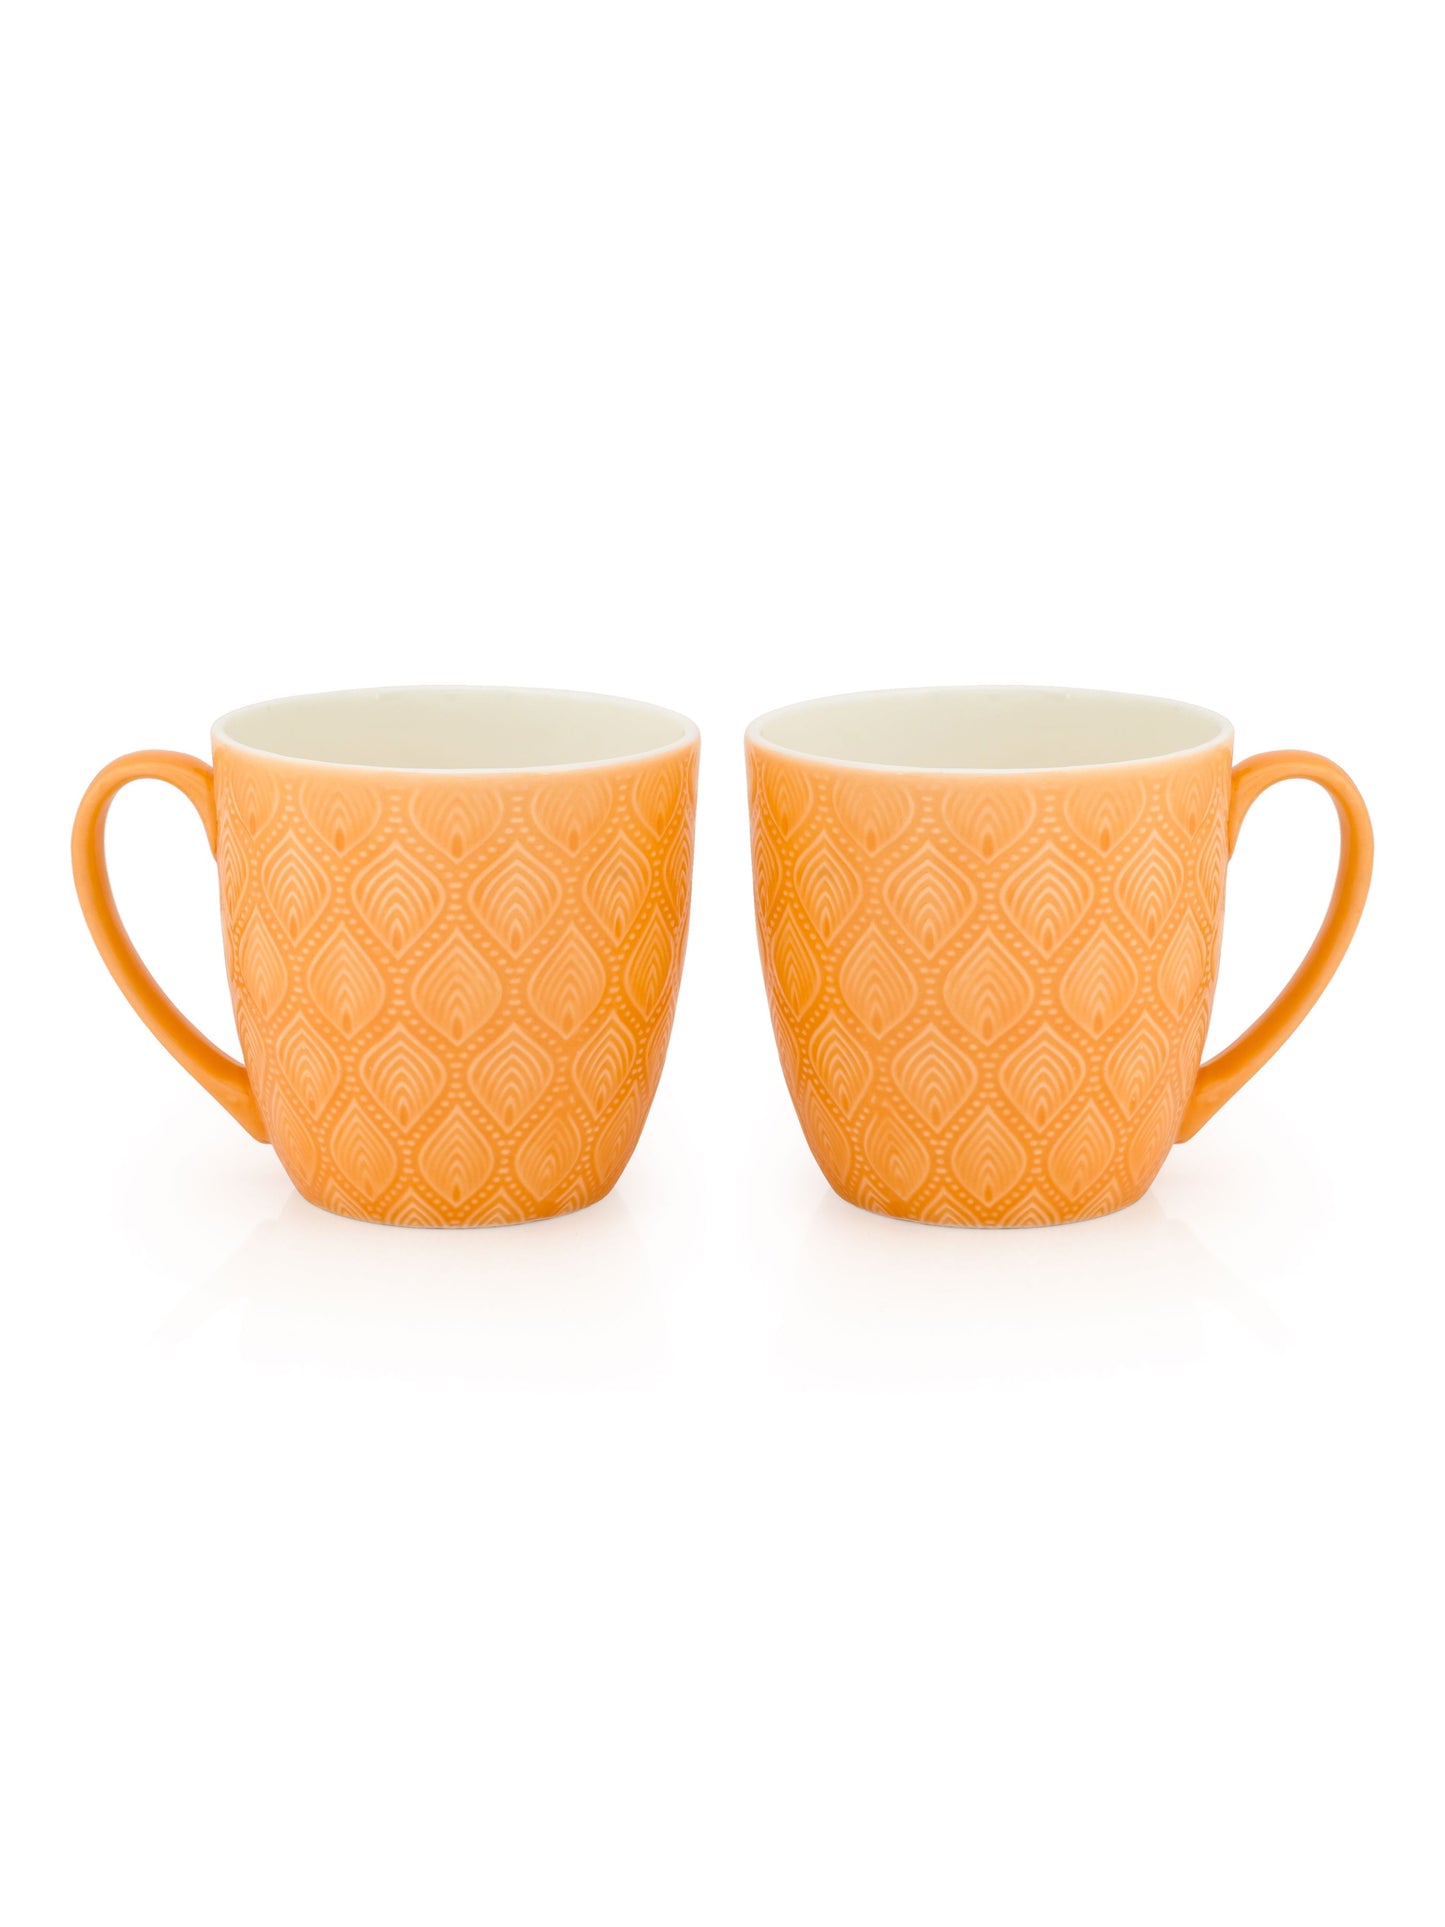 JCPL Feast Kohinoor Coffee & Tea Mug Set of 6 (Orange)